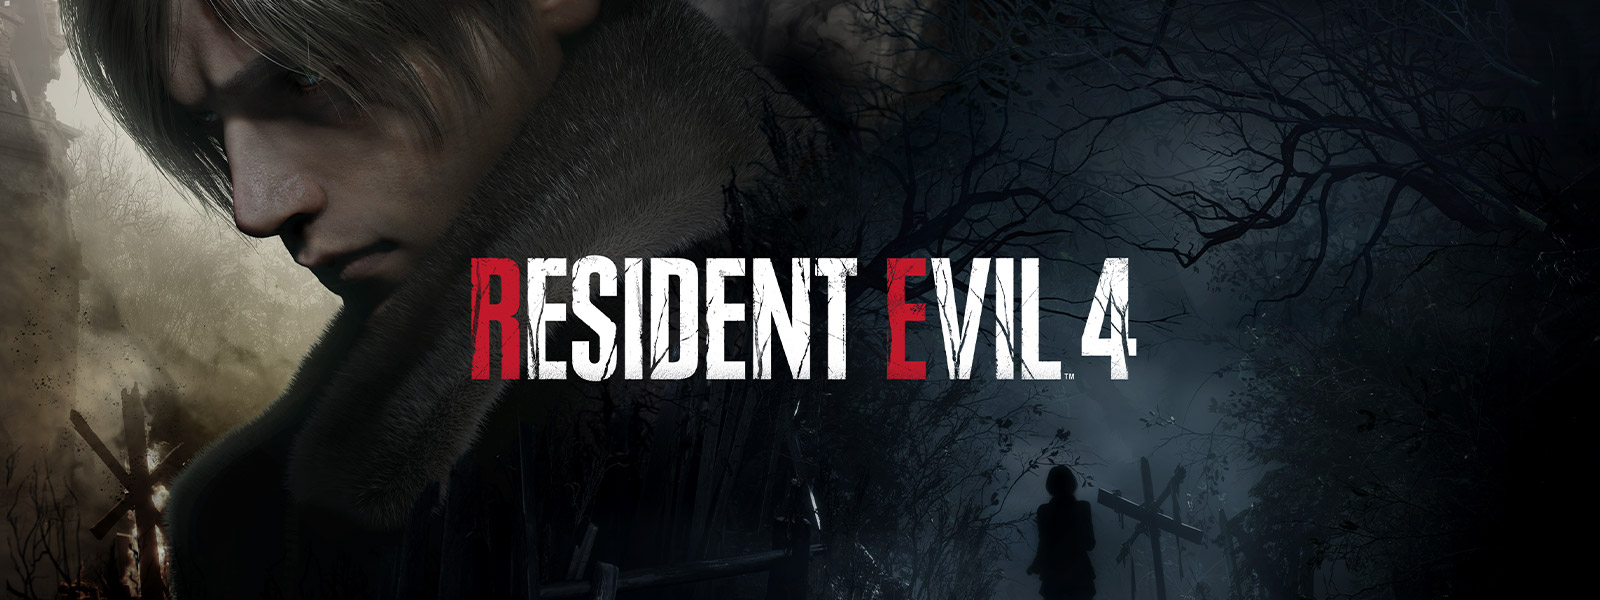 Resident Evil 4, En mann med grått hår snur seg vekk mens en kvinne vandrer ned en mørk og skummel skogssti.